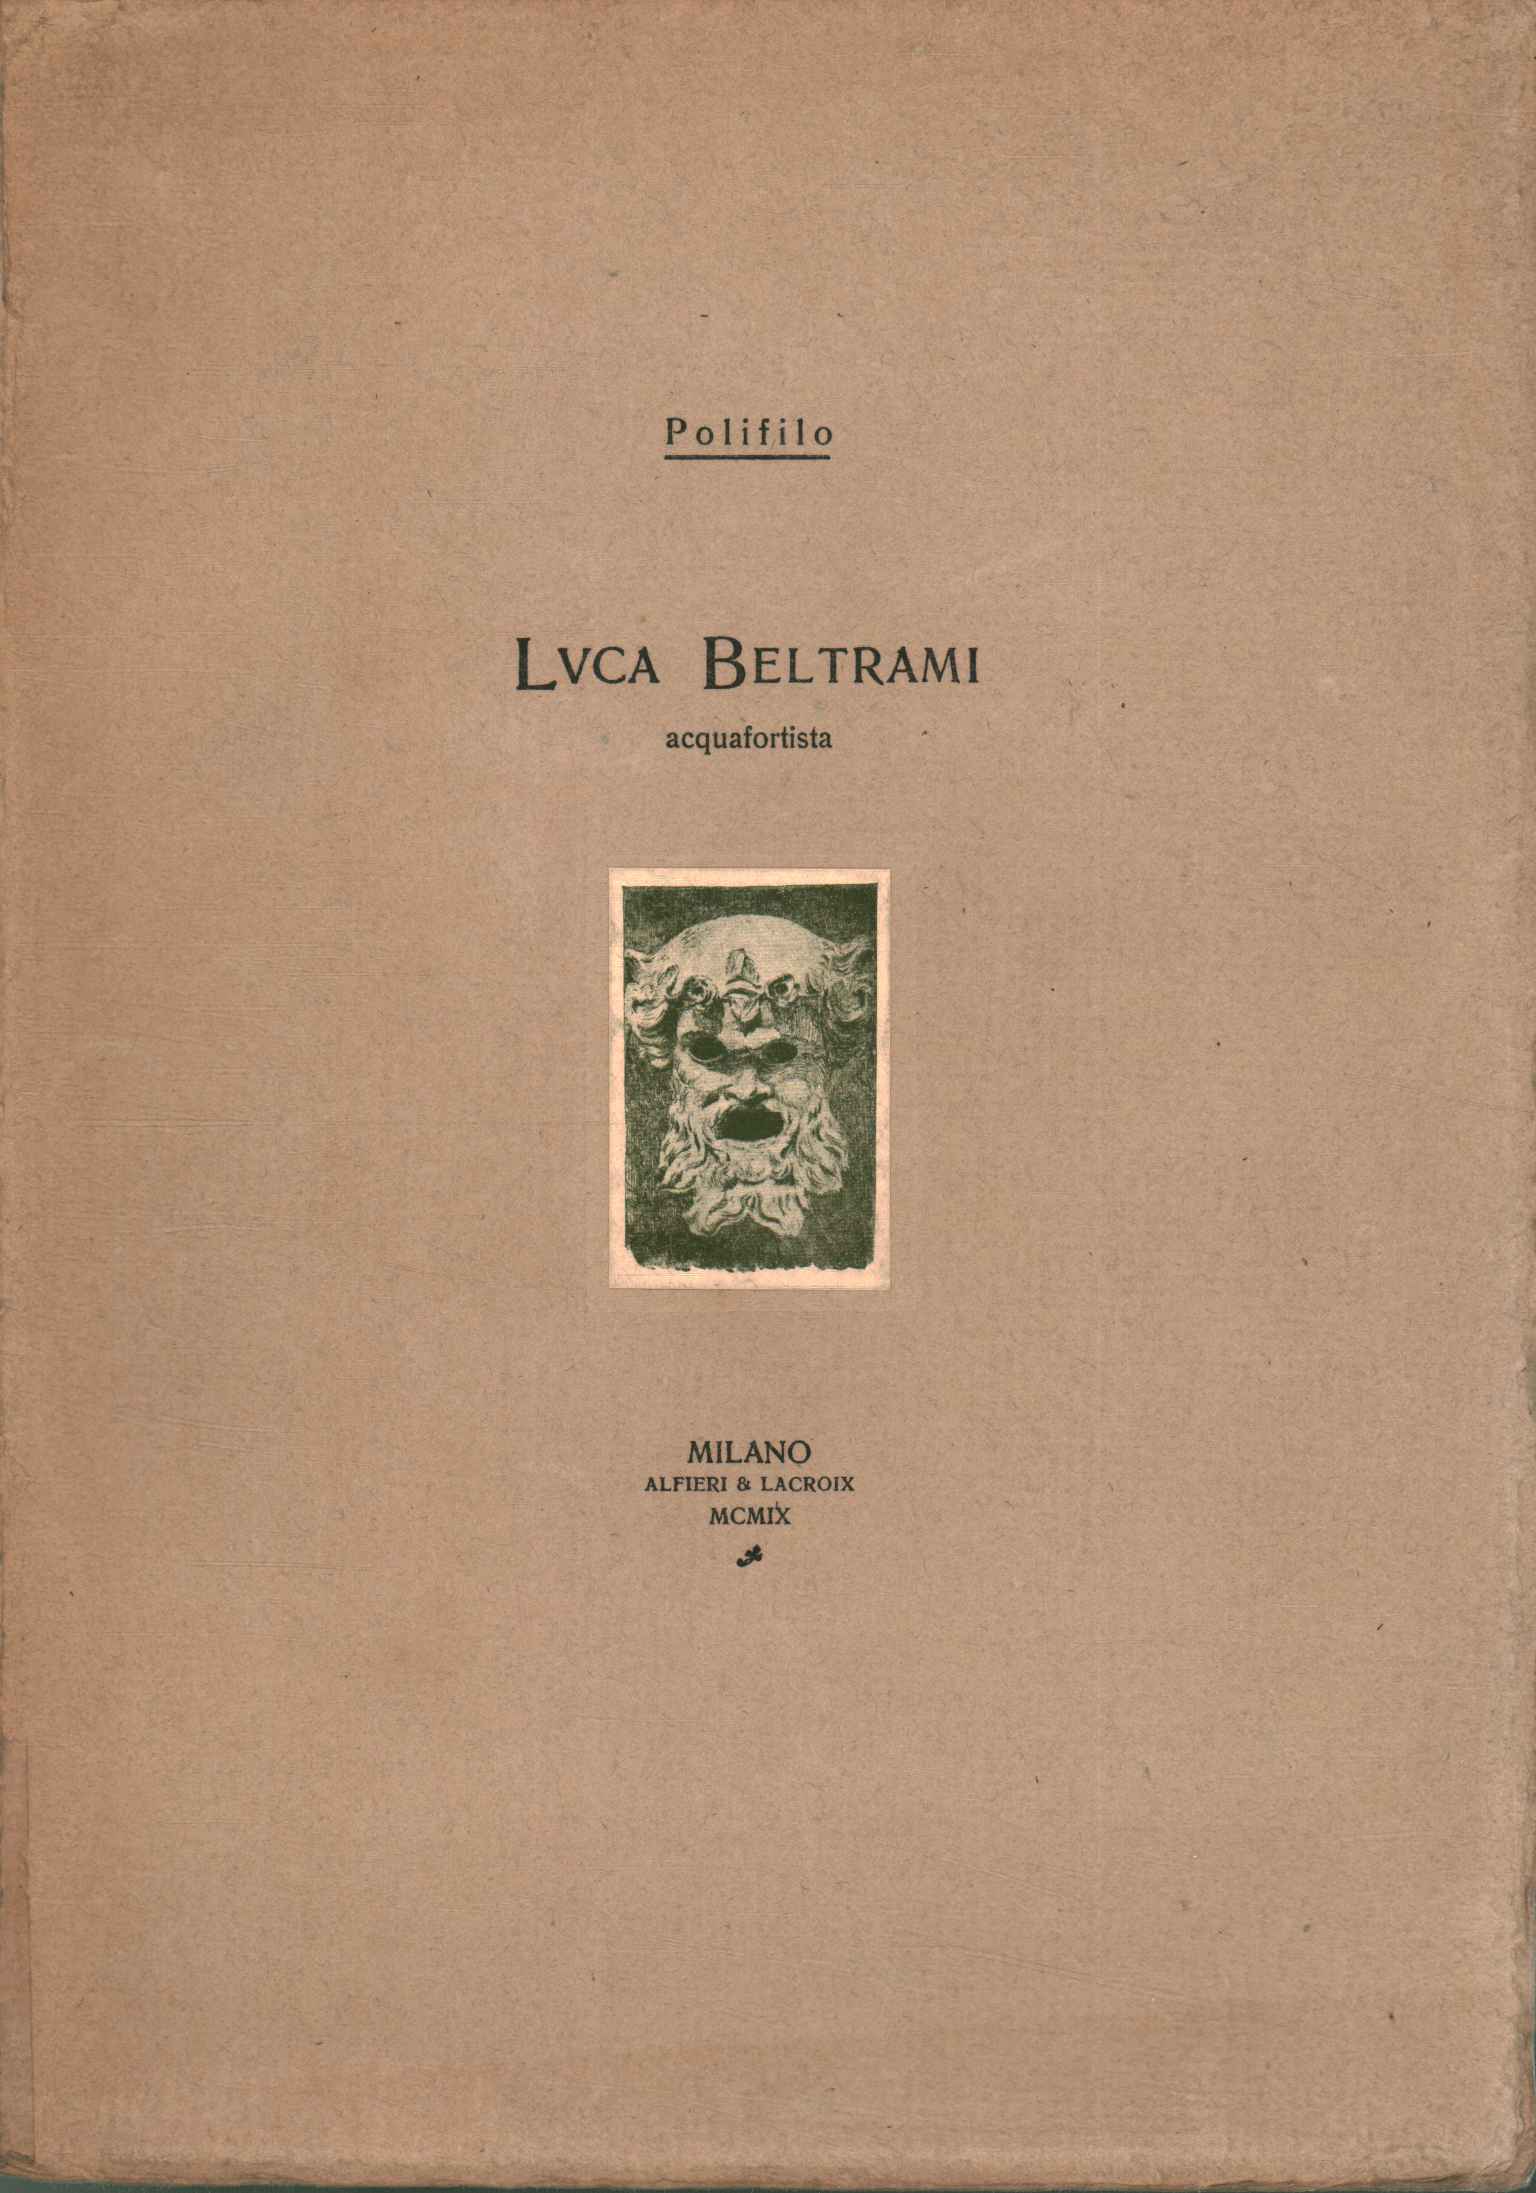 Luca Beltrami etching artist